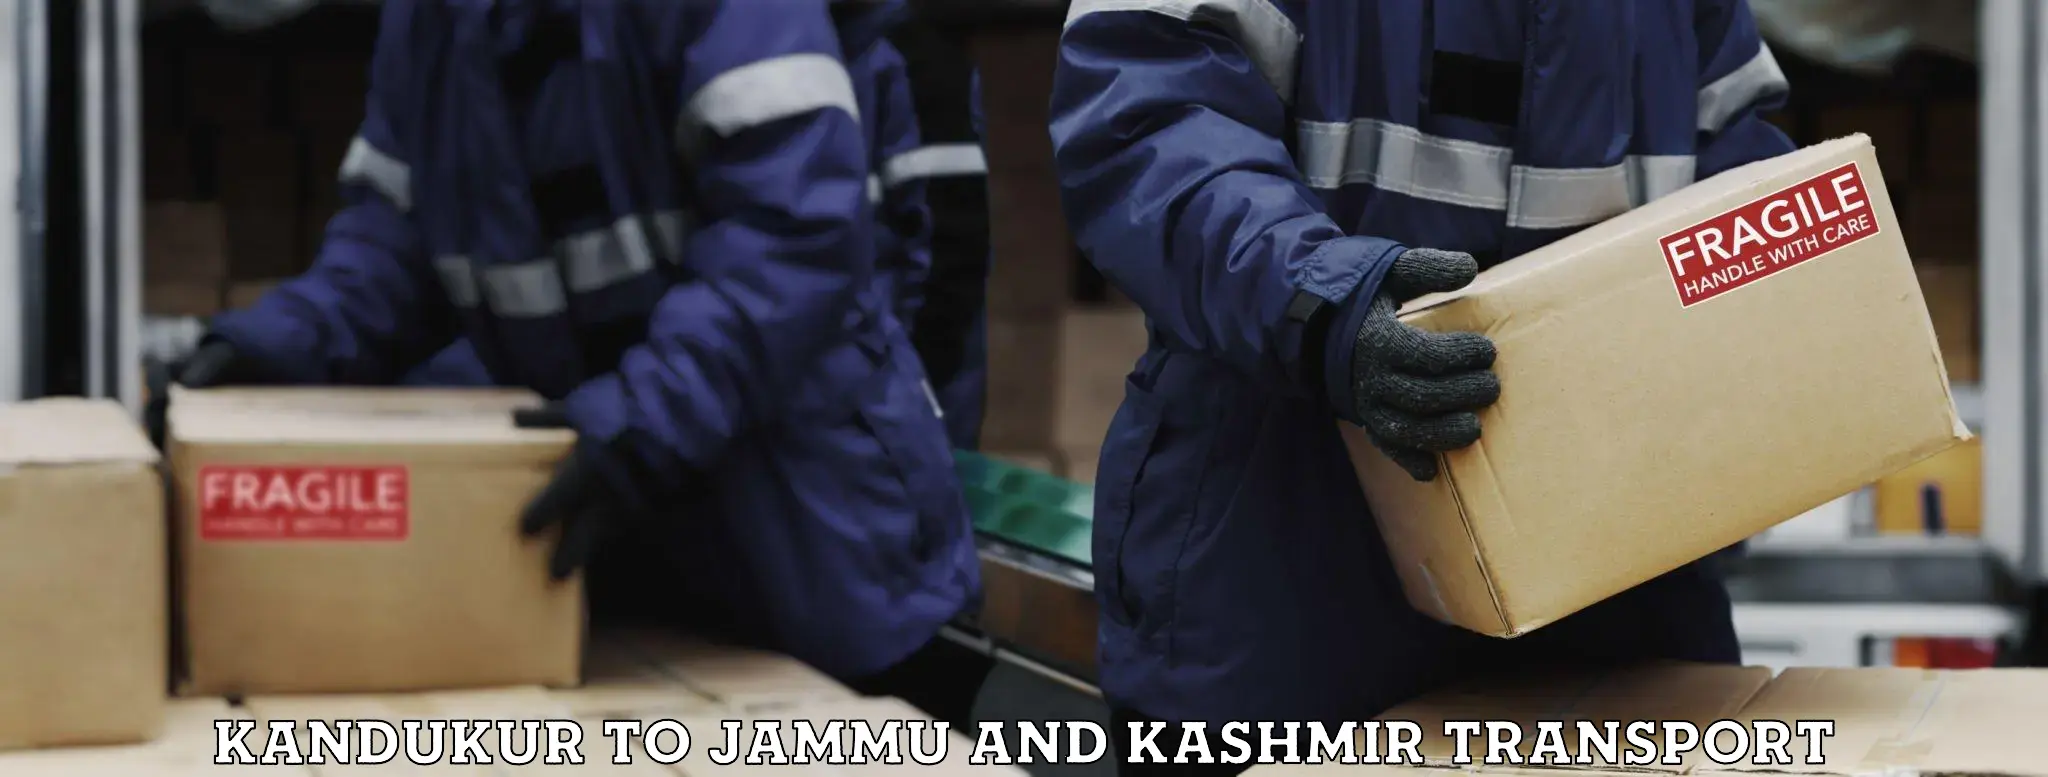 Bike shipping service Kandukur to Jammu and Kashmir